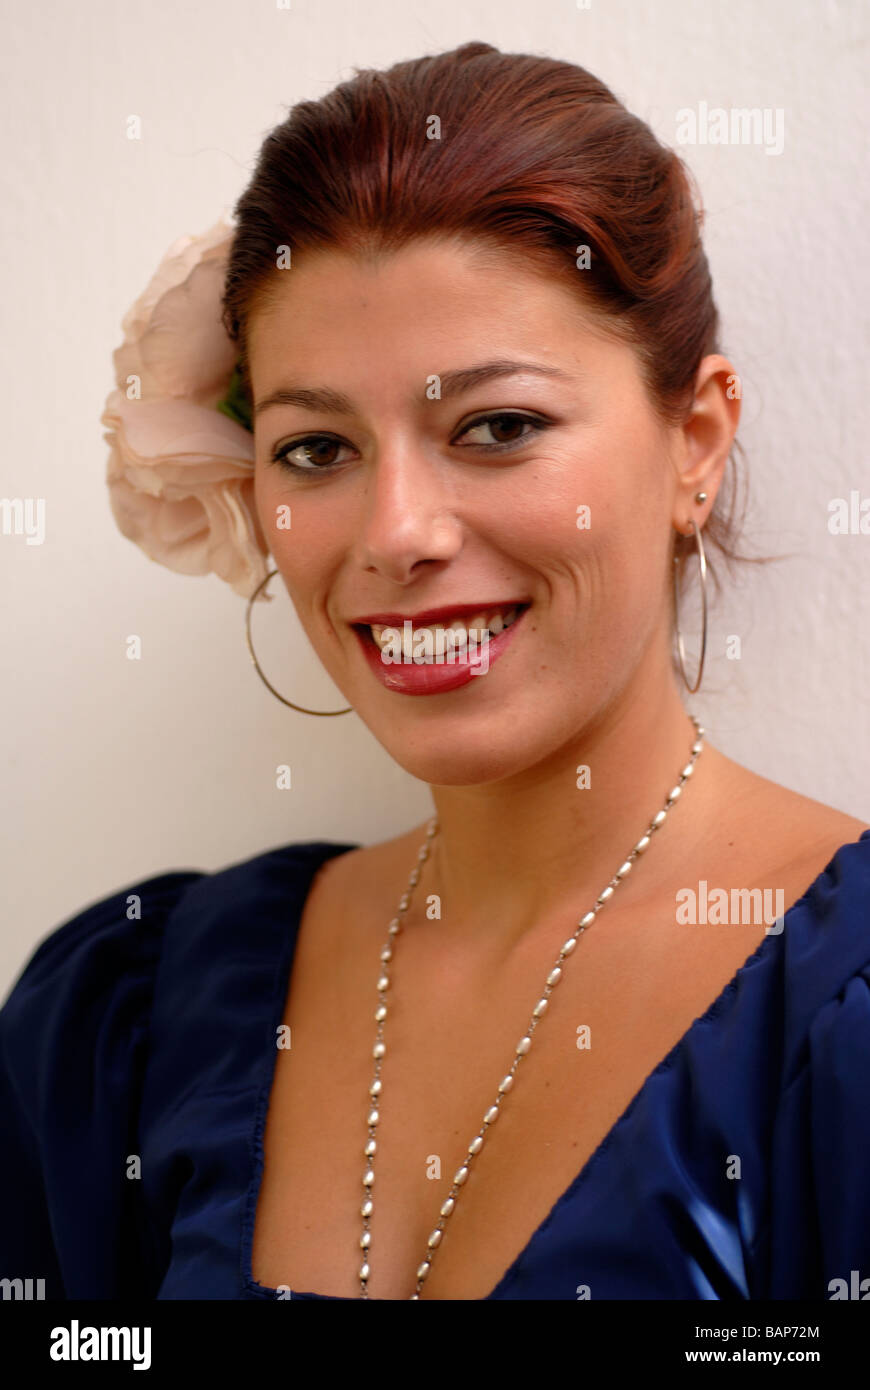 Espagne portrait d'une jeune fille espagnole avec la boucle d'oreilles et une fleur dans les cheveux Banque D'Images